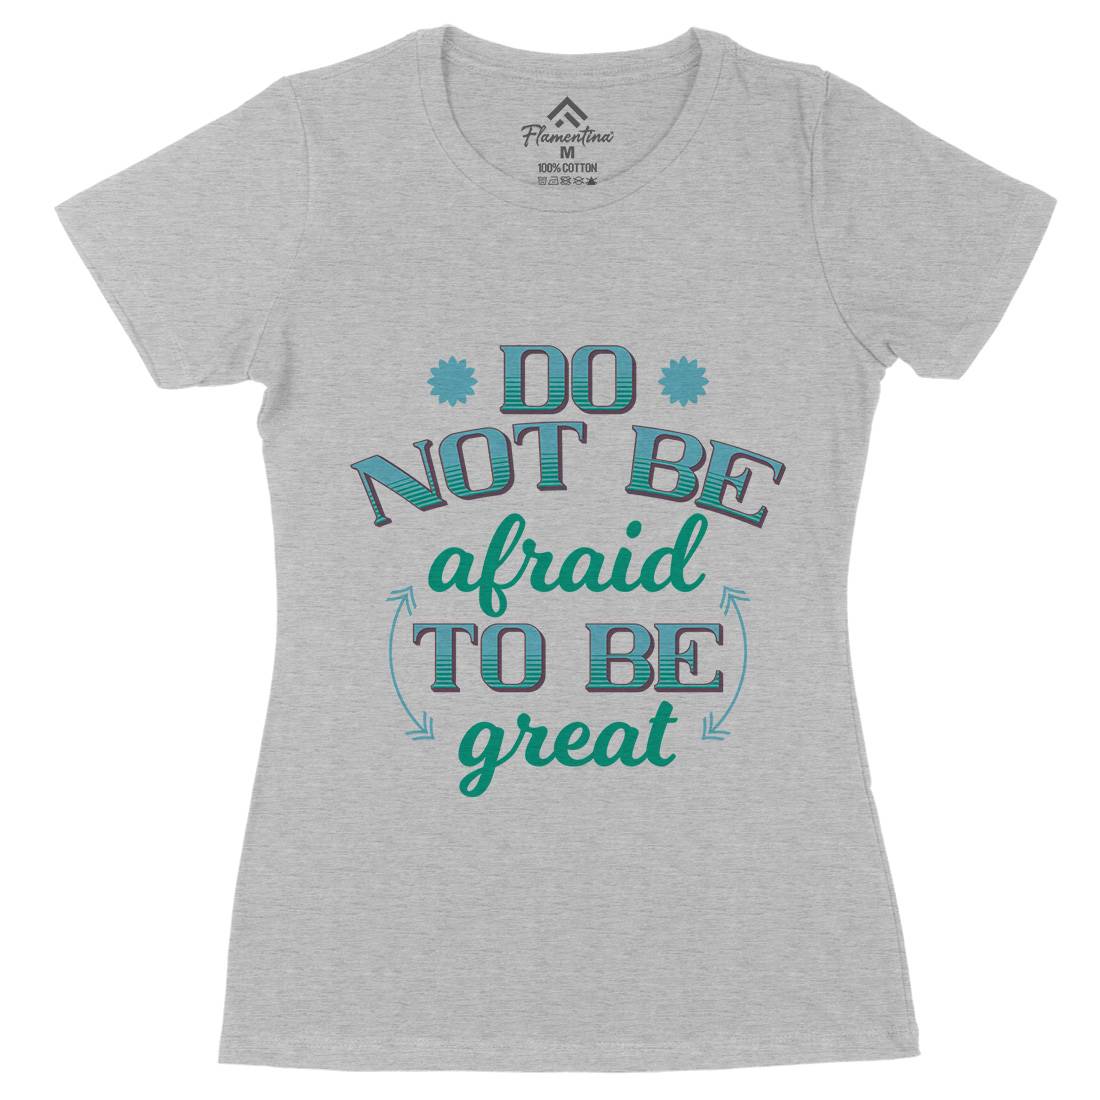 Be Great Womens Organic Crew Neck T-Shirt Retro B278